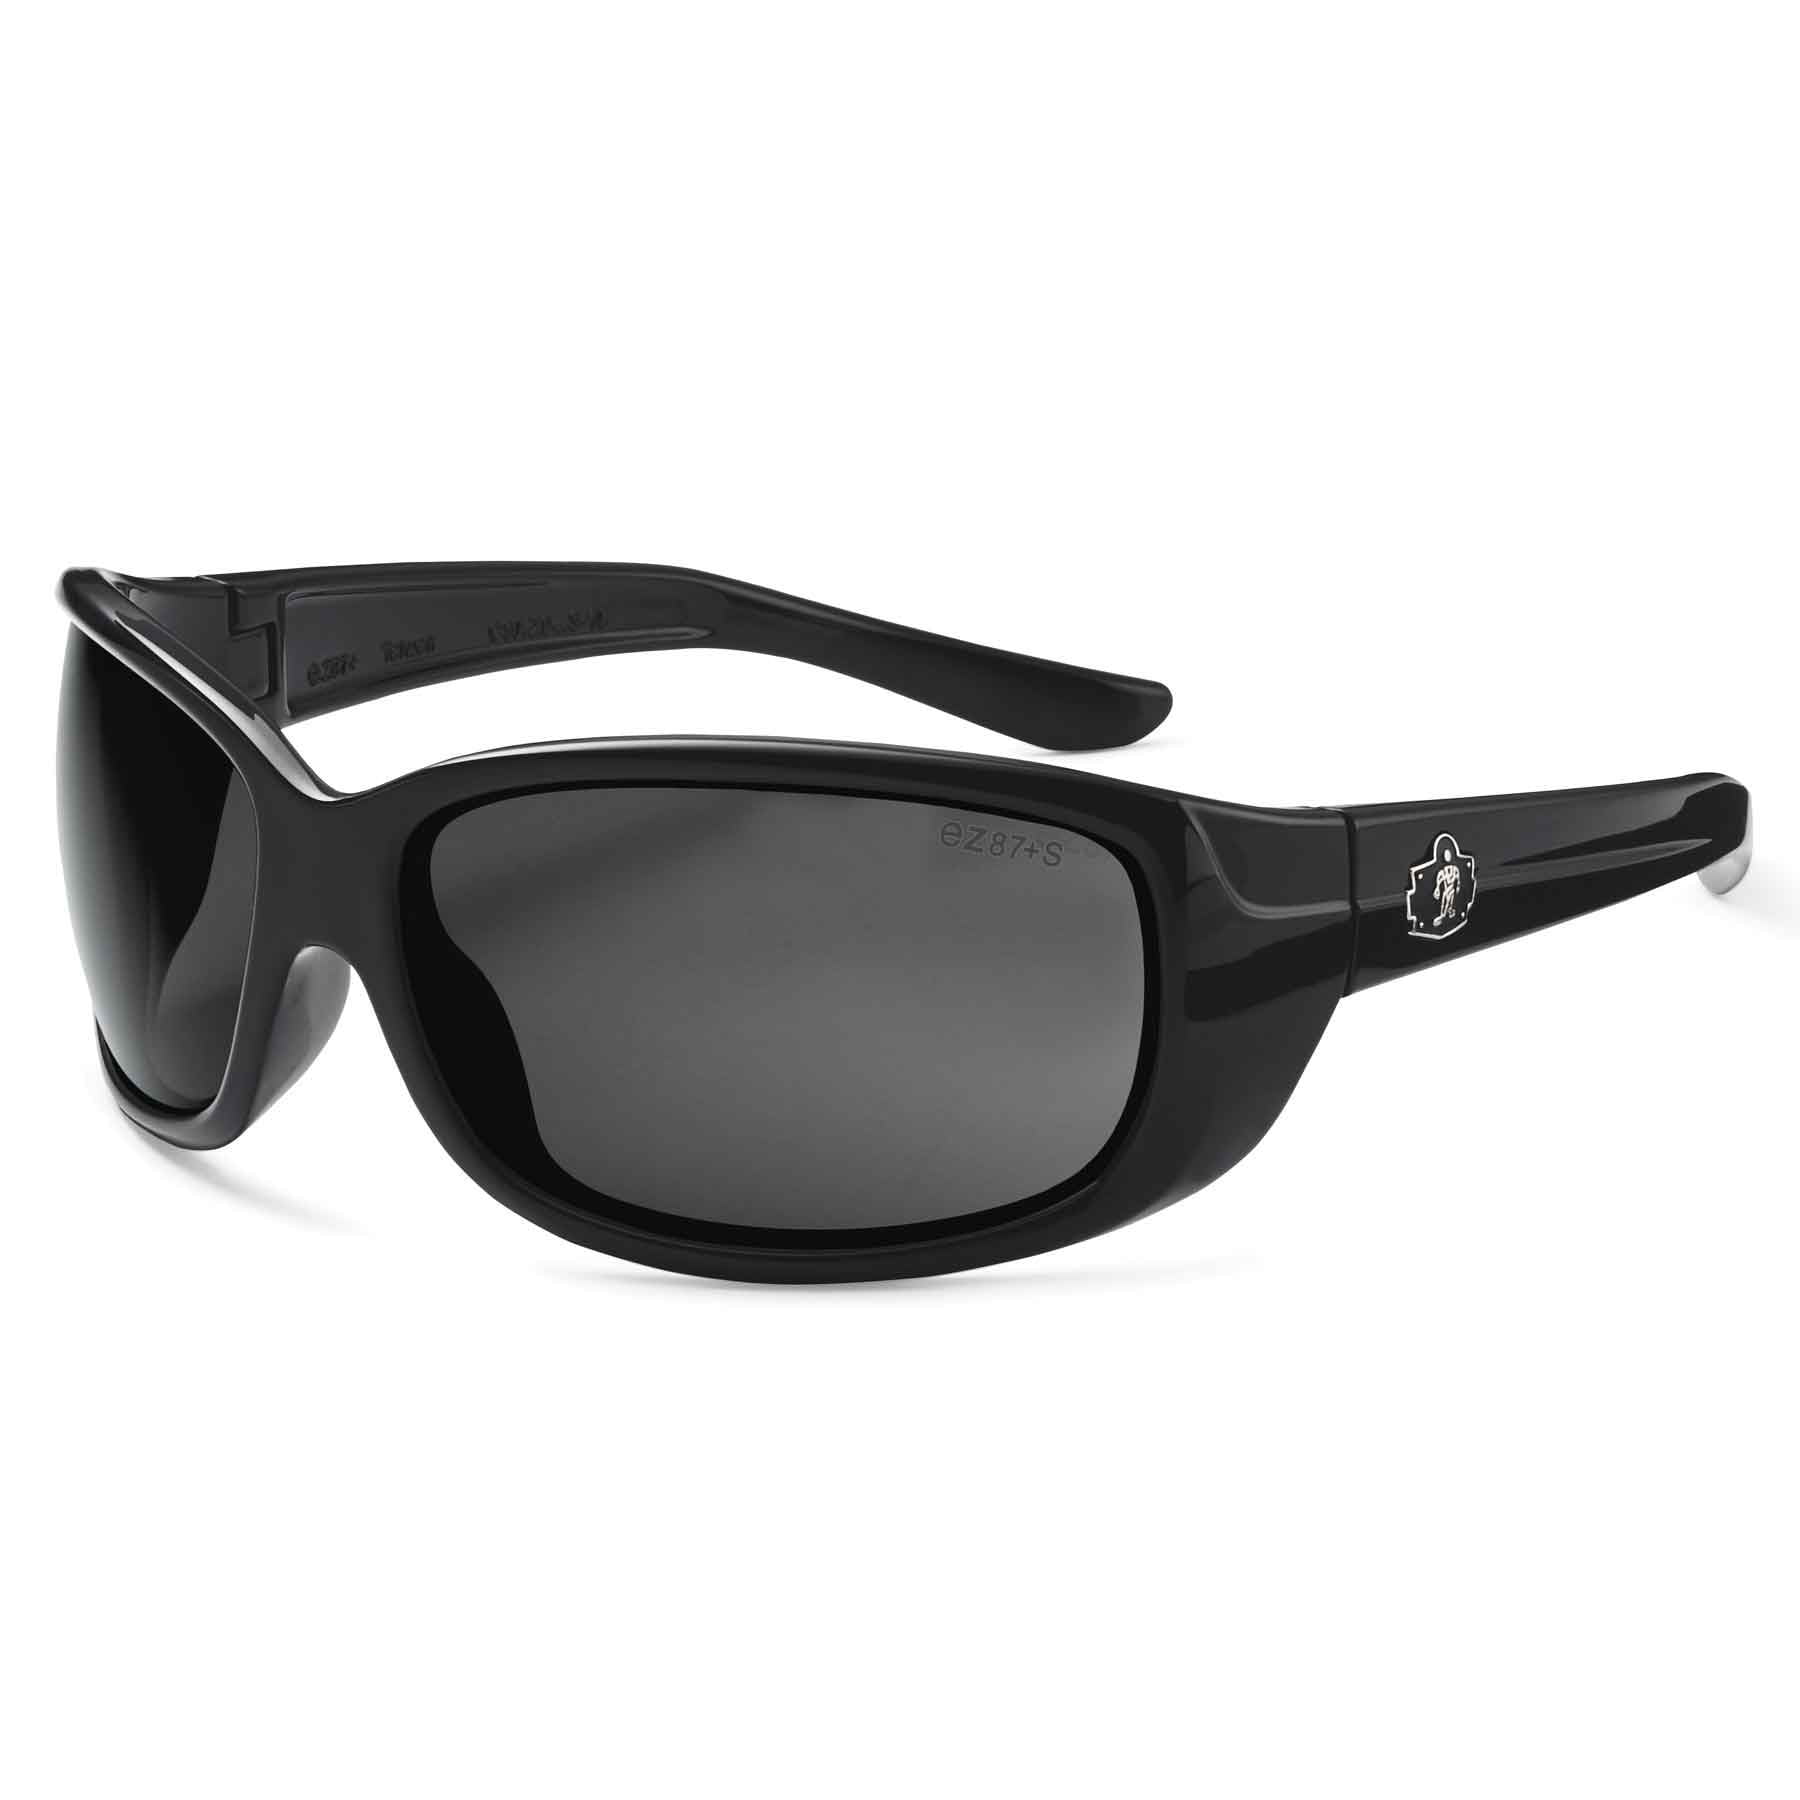 Skullerz ERDA-PZ Safety Glasses Black Polarized Smoke Lens - Walmart.com